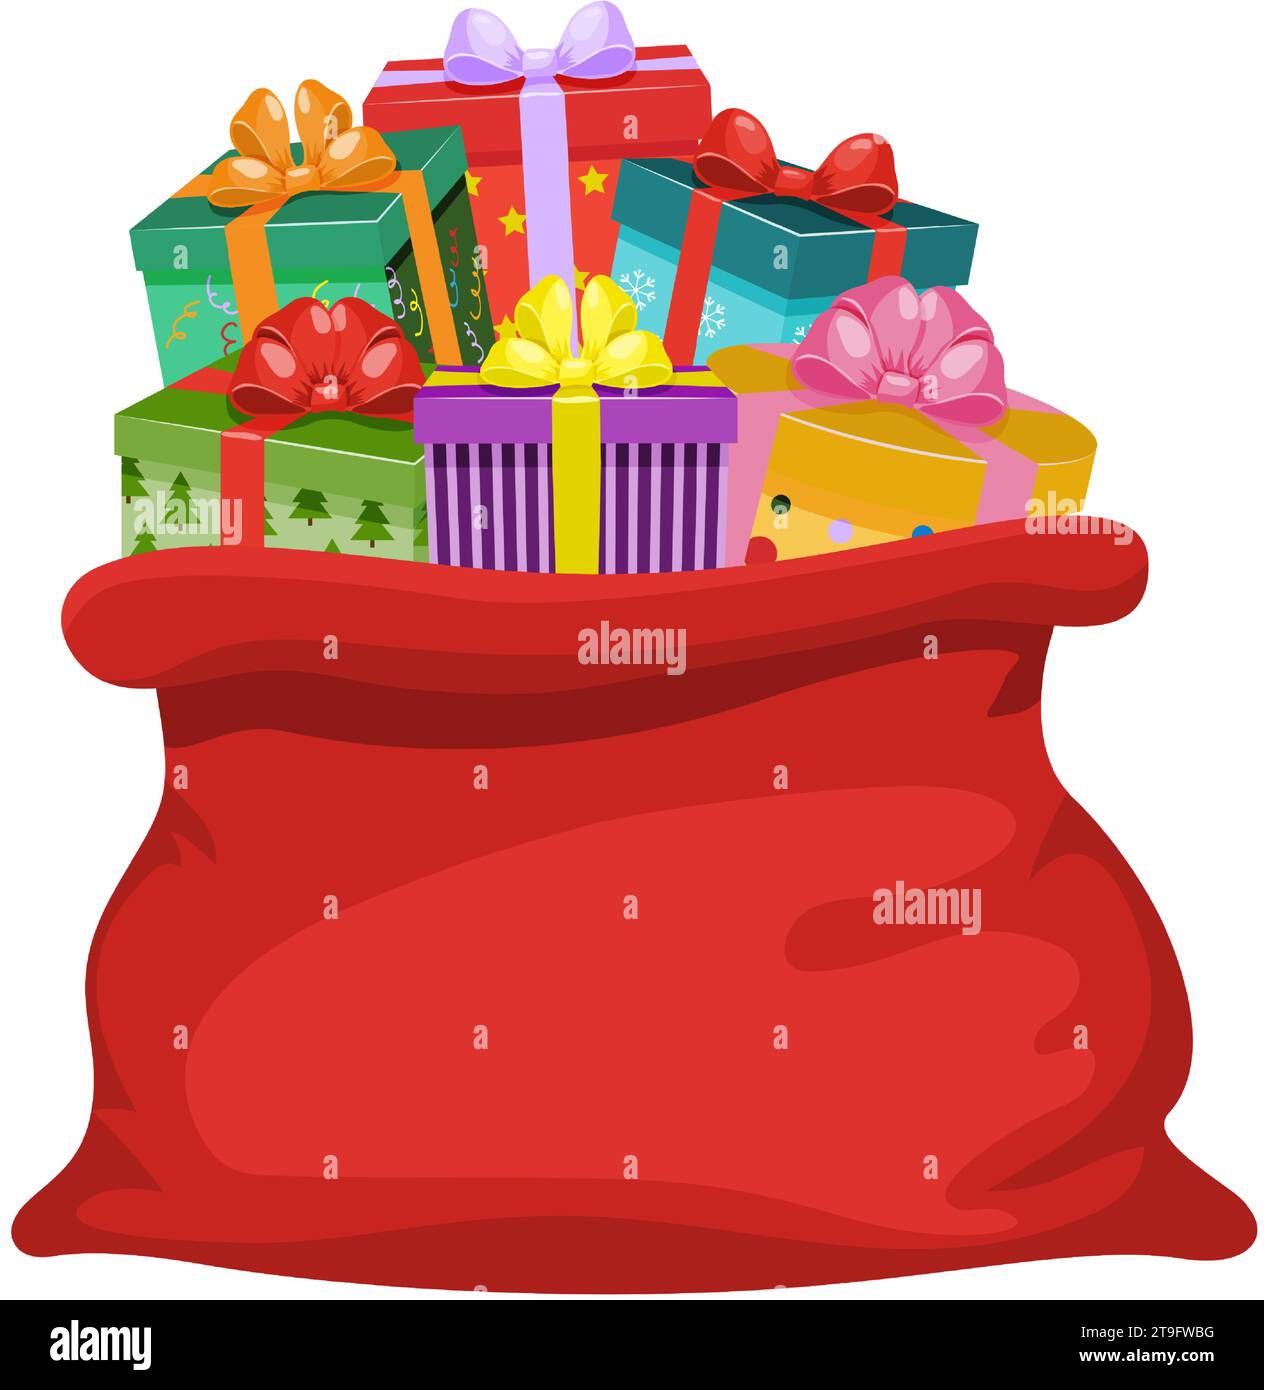 Ein roter Sack Weihnachtsmann voller Geschenke. Große offene Tasche mit Geschenkboxen. Traditionelles Weihnachts- und Neujahrssymbol, Attribut des Weihnachtsmanns. Vektor krank Stock Vektor